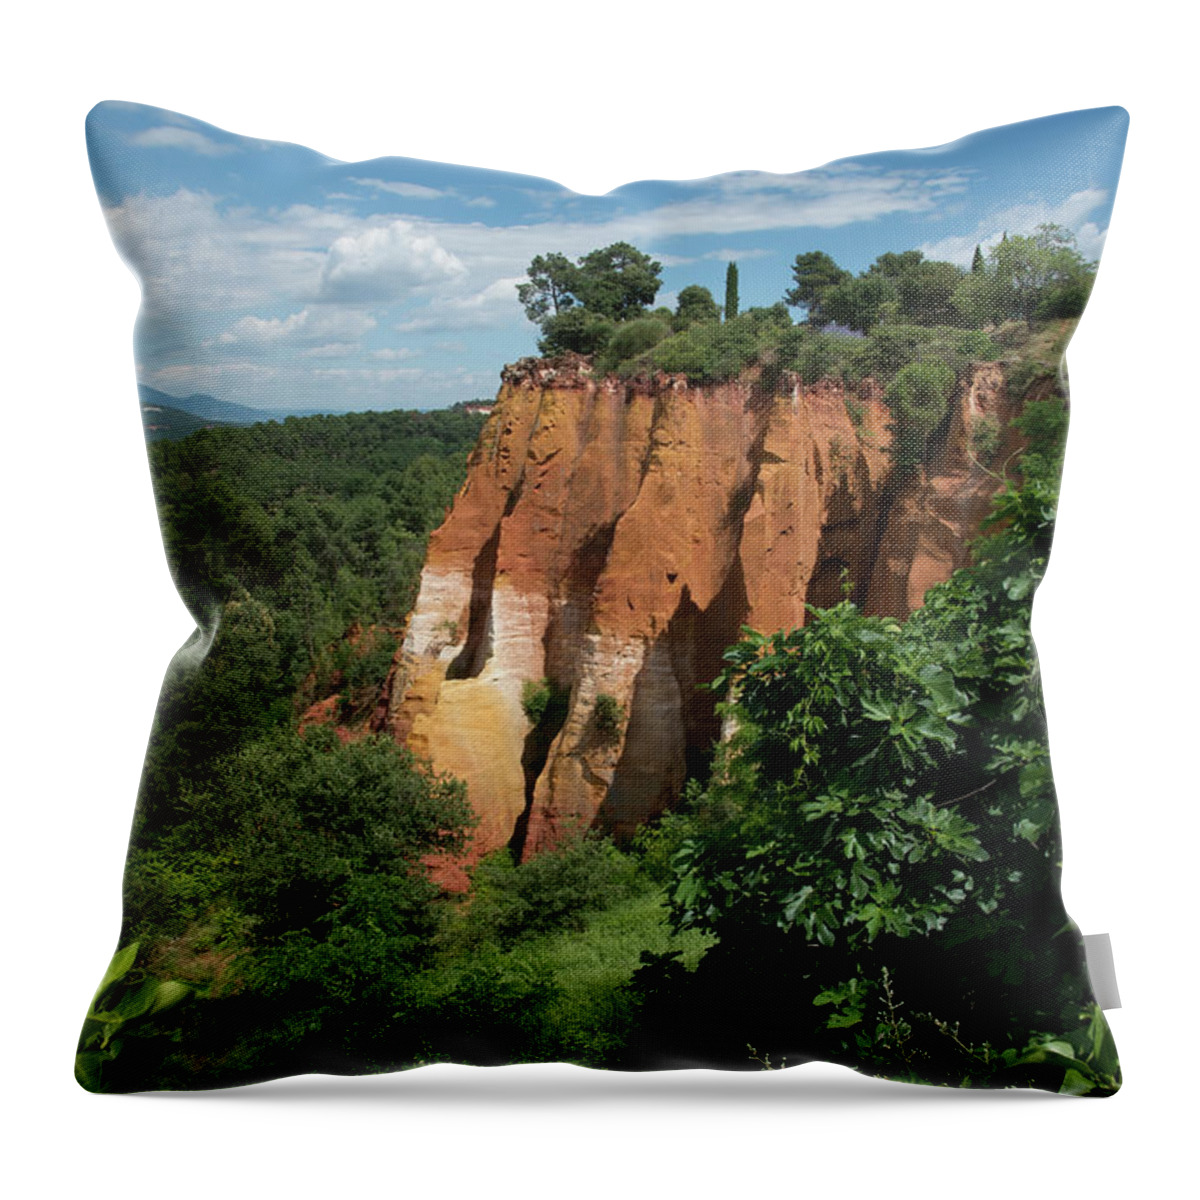 Roussillon Throw Pillow featuring the photograph Ochre Cliff by Wade Aiken